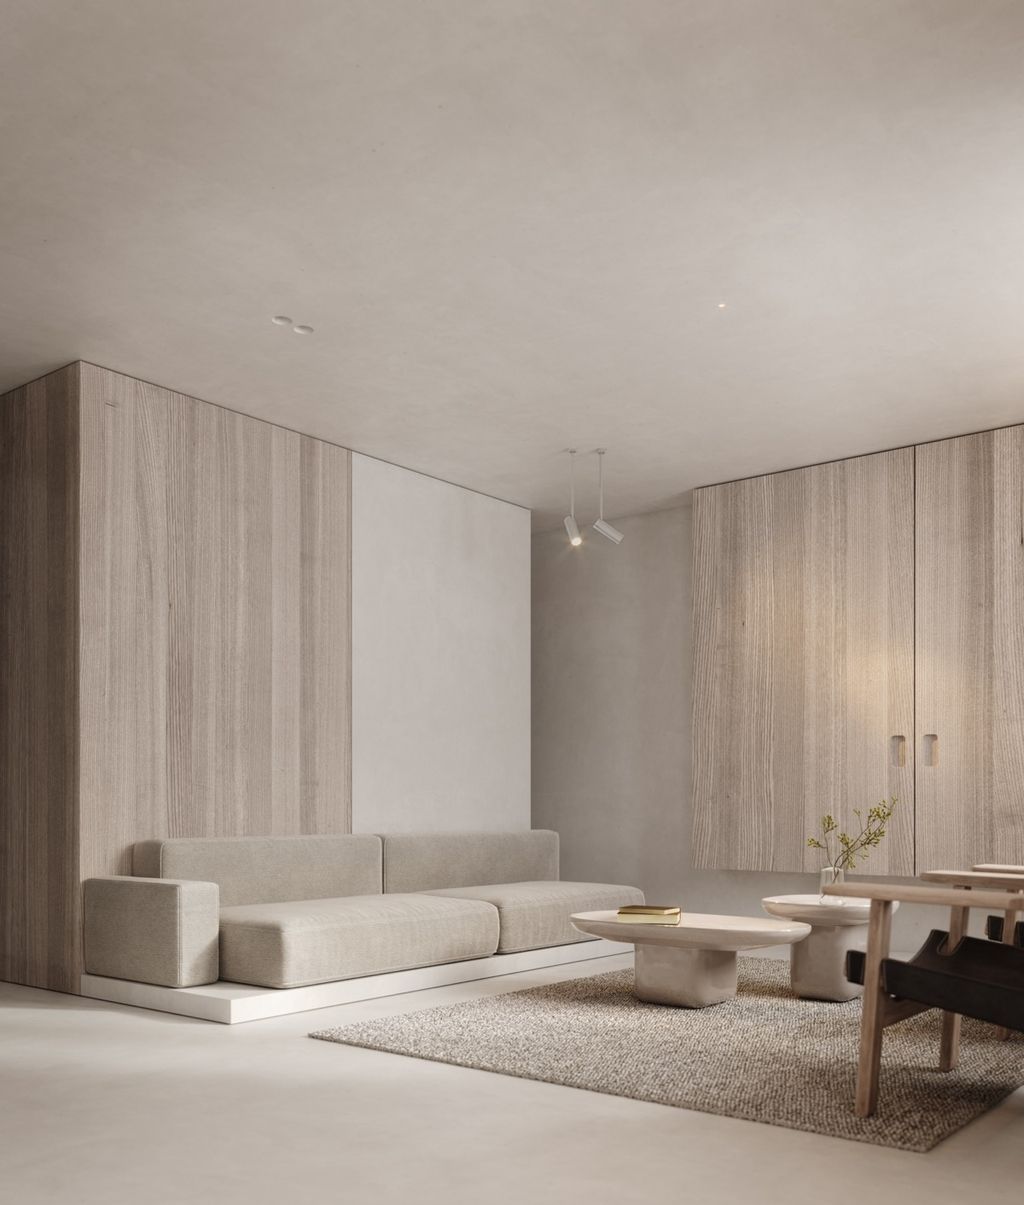 minimalist غرفة معيشة بالدرجات الترابية وبأسلوب  